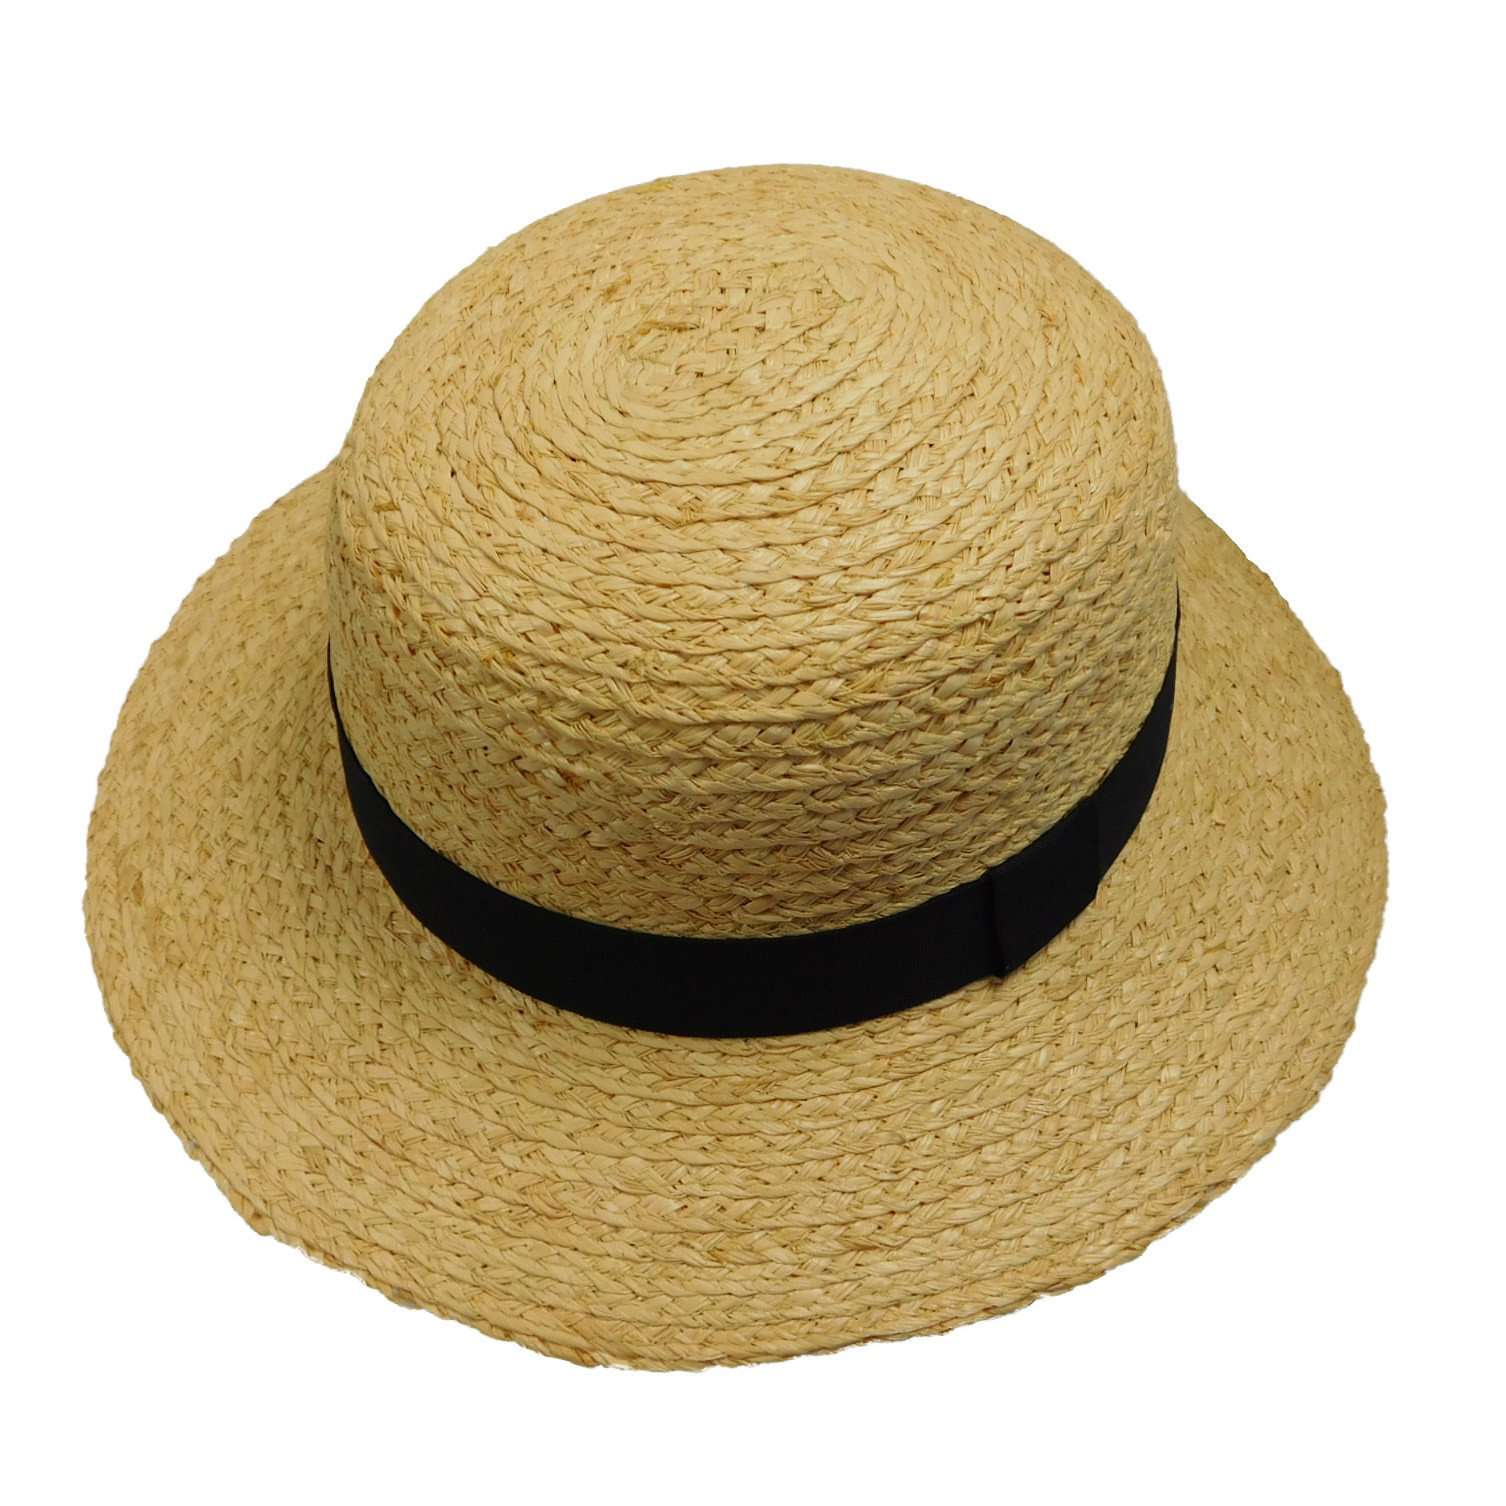 Raffia Braid Boater Hat with Black Ribbon Band - Boardwalk Style